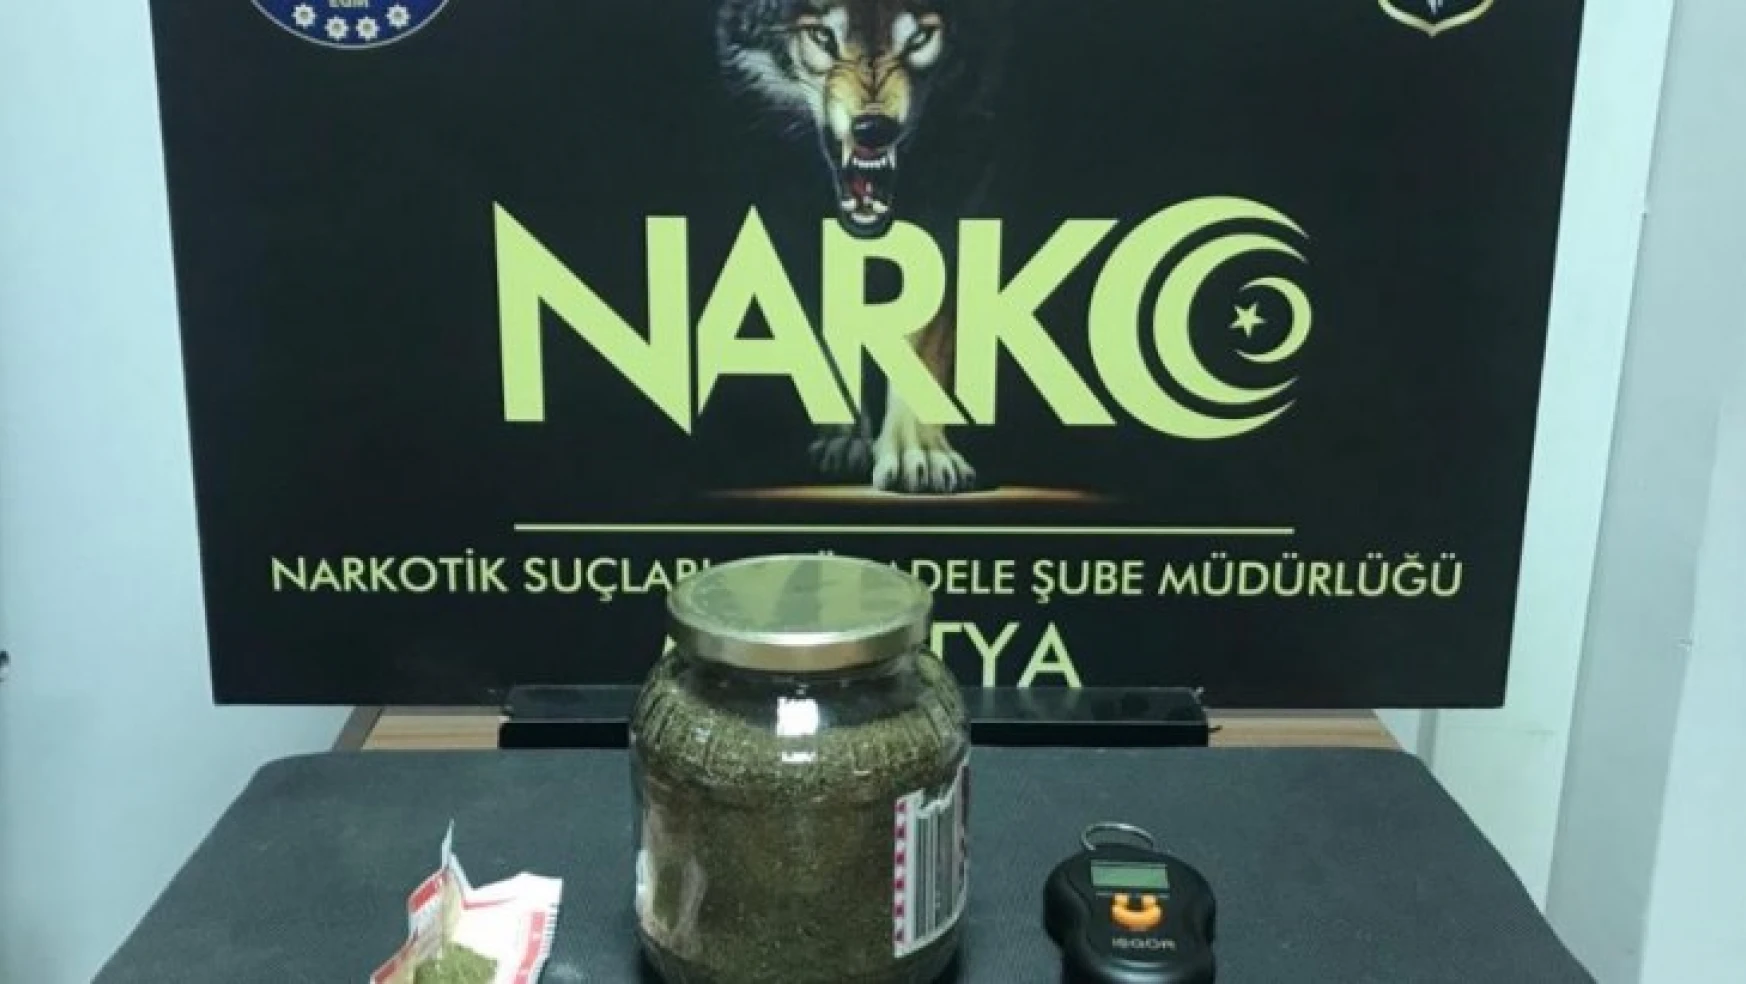 Malatya'da uyuşturucu tacirlerine operasyon: 7 gözaltı